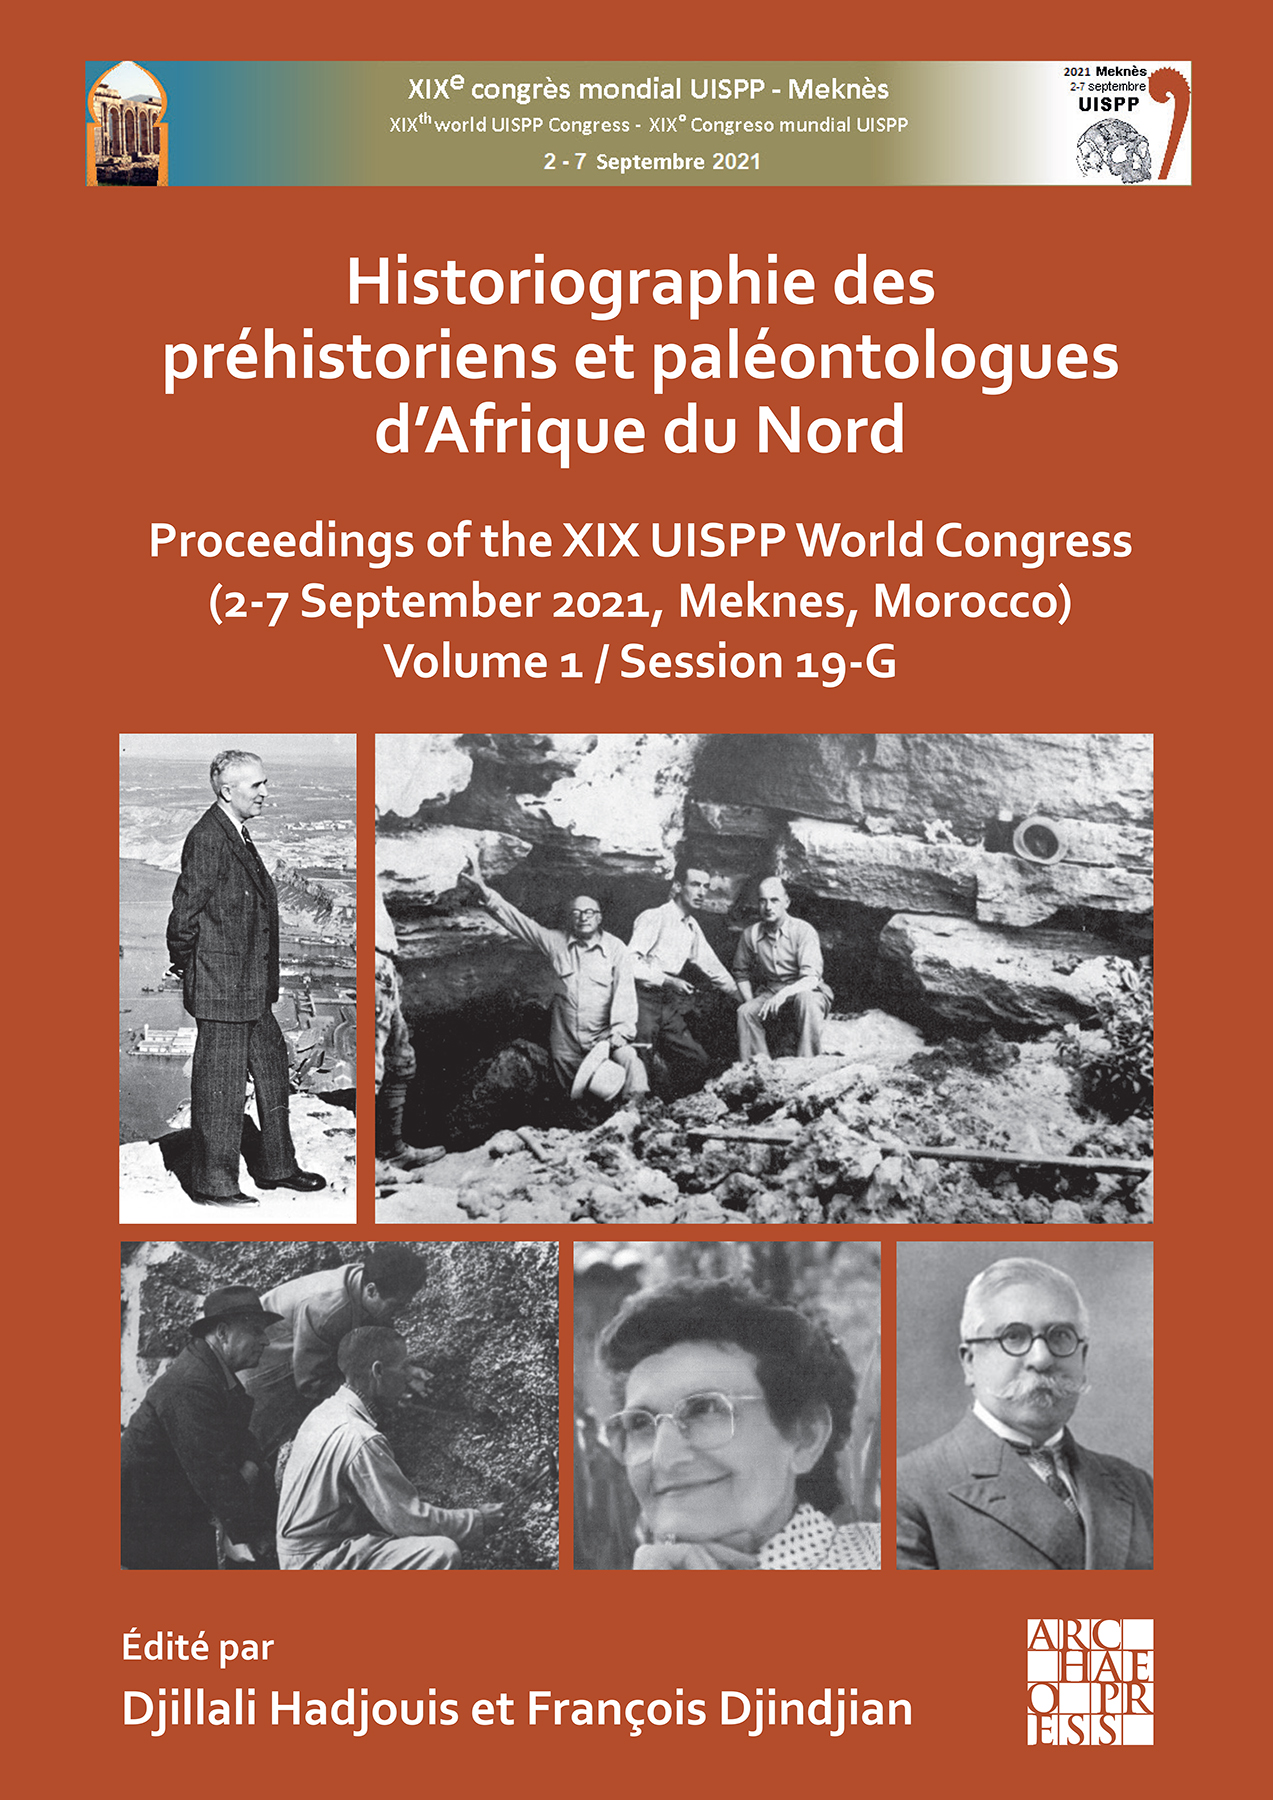 Historiographie des préhistoriens et paléontologues d'Afrique du Nord, (actes XIXe coll. UISPP, Sept. 2021, Meknes, Maroc, Volume 1 / Session 19-G), 2023, 202 p.